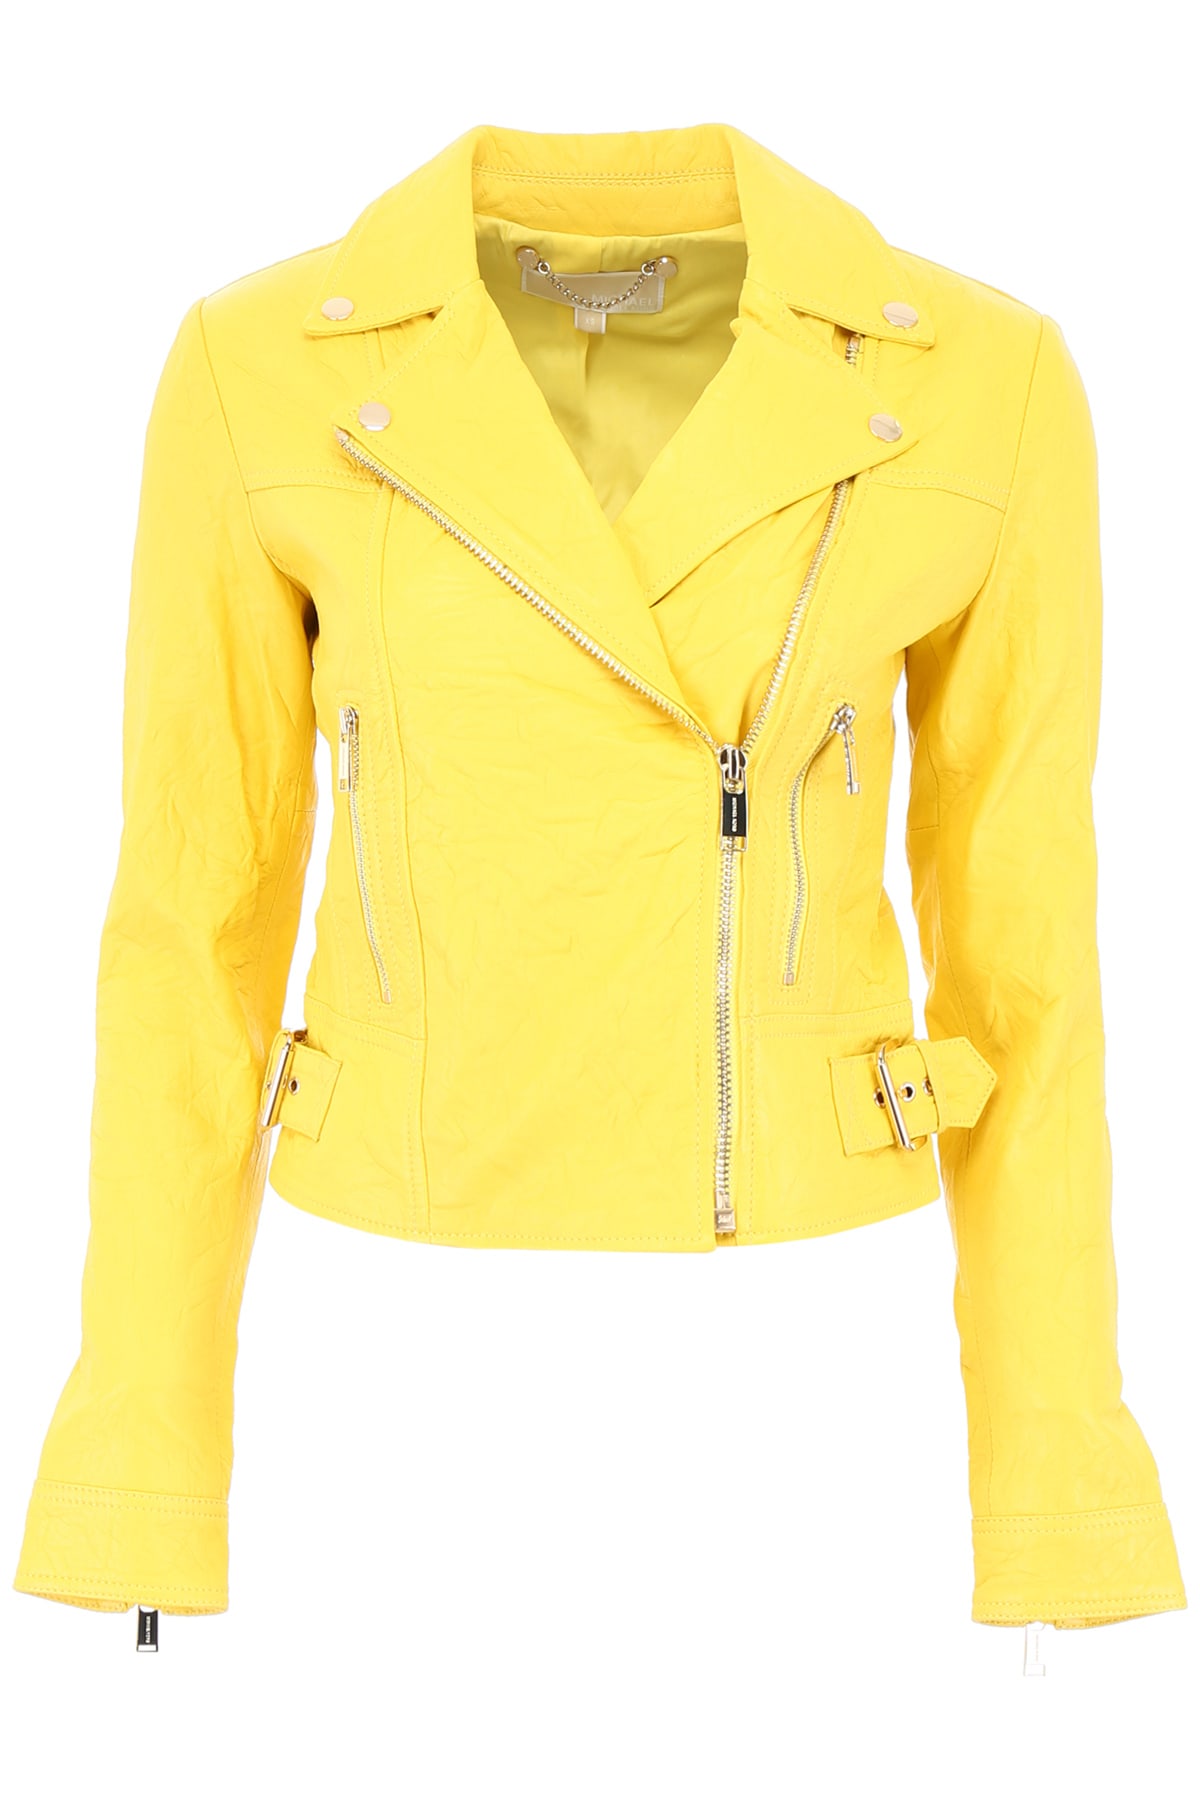 michael kors yellow jacket